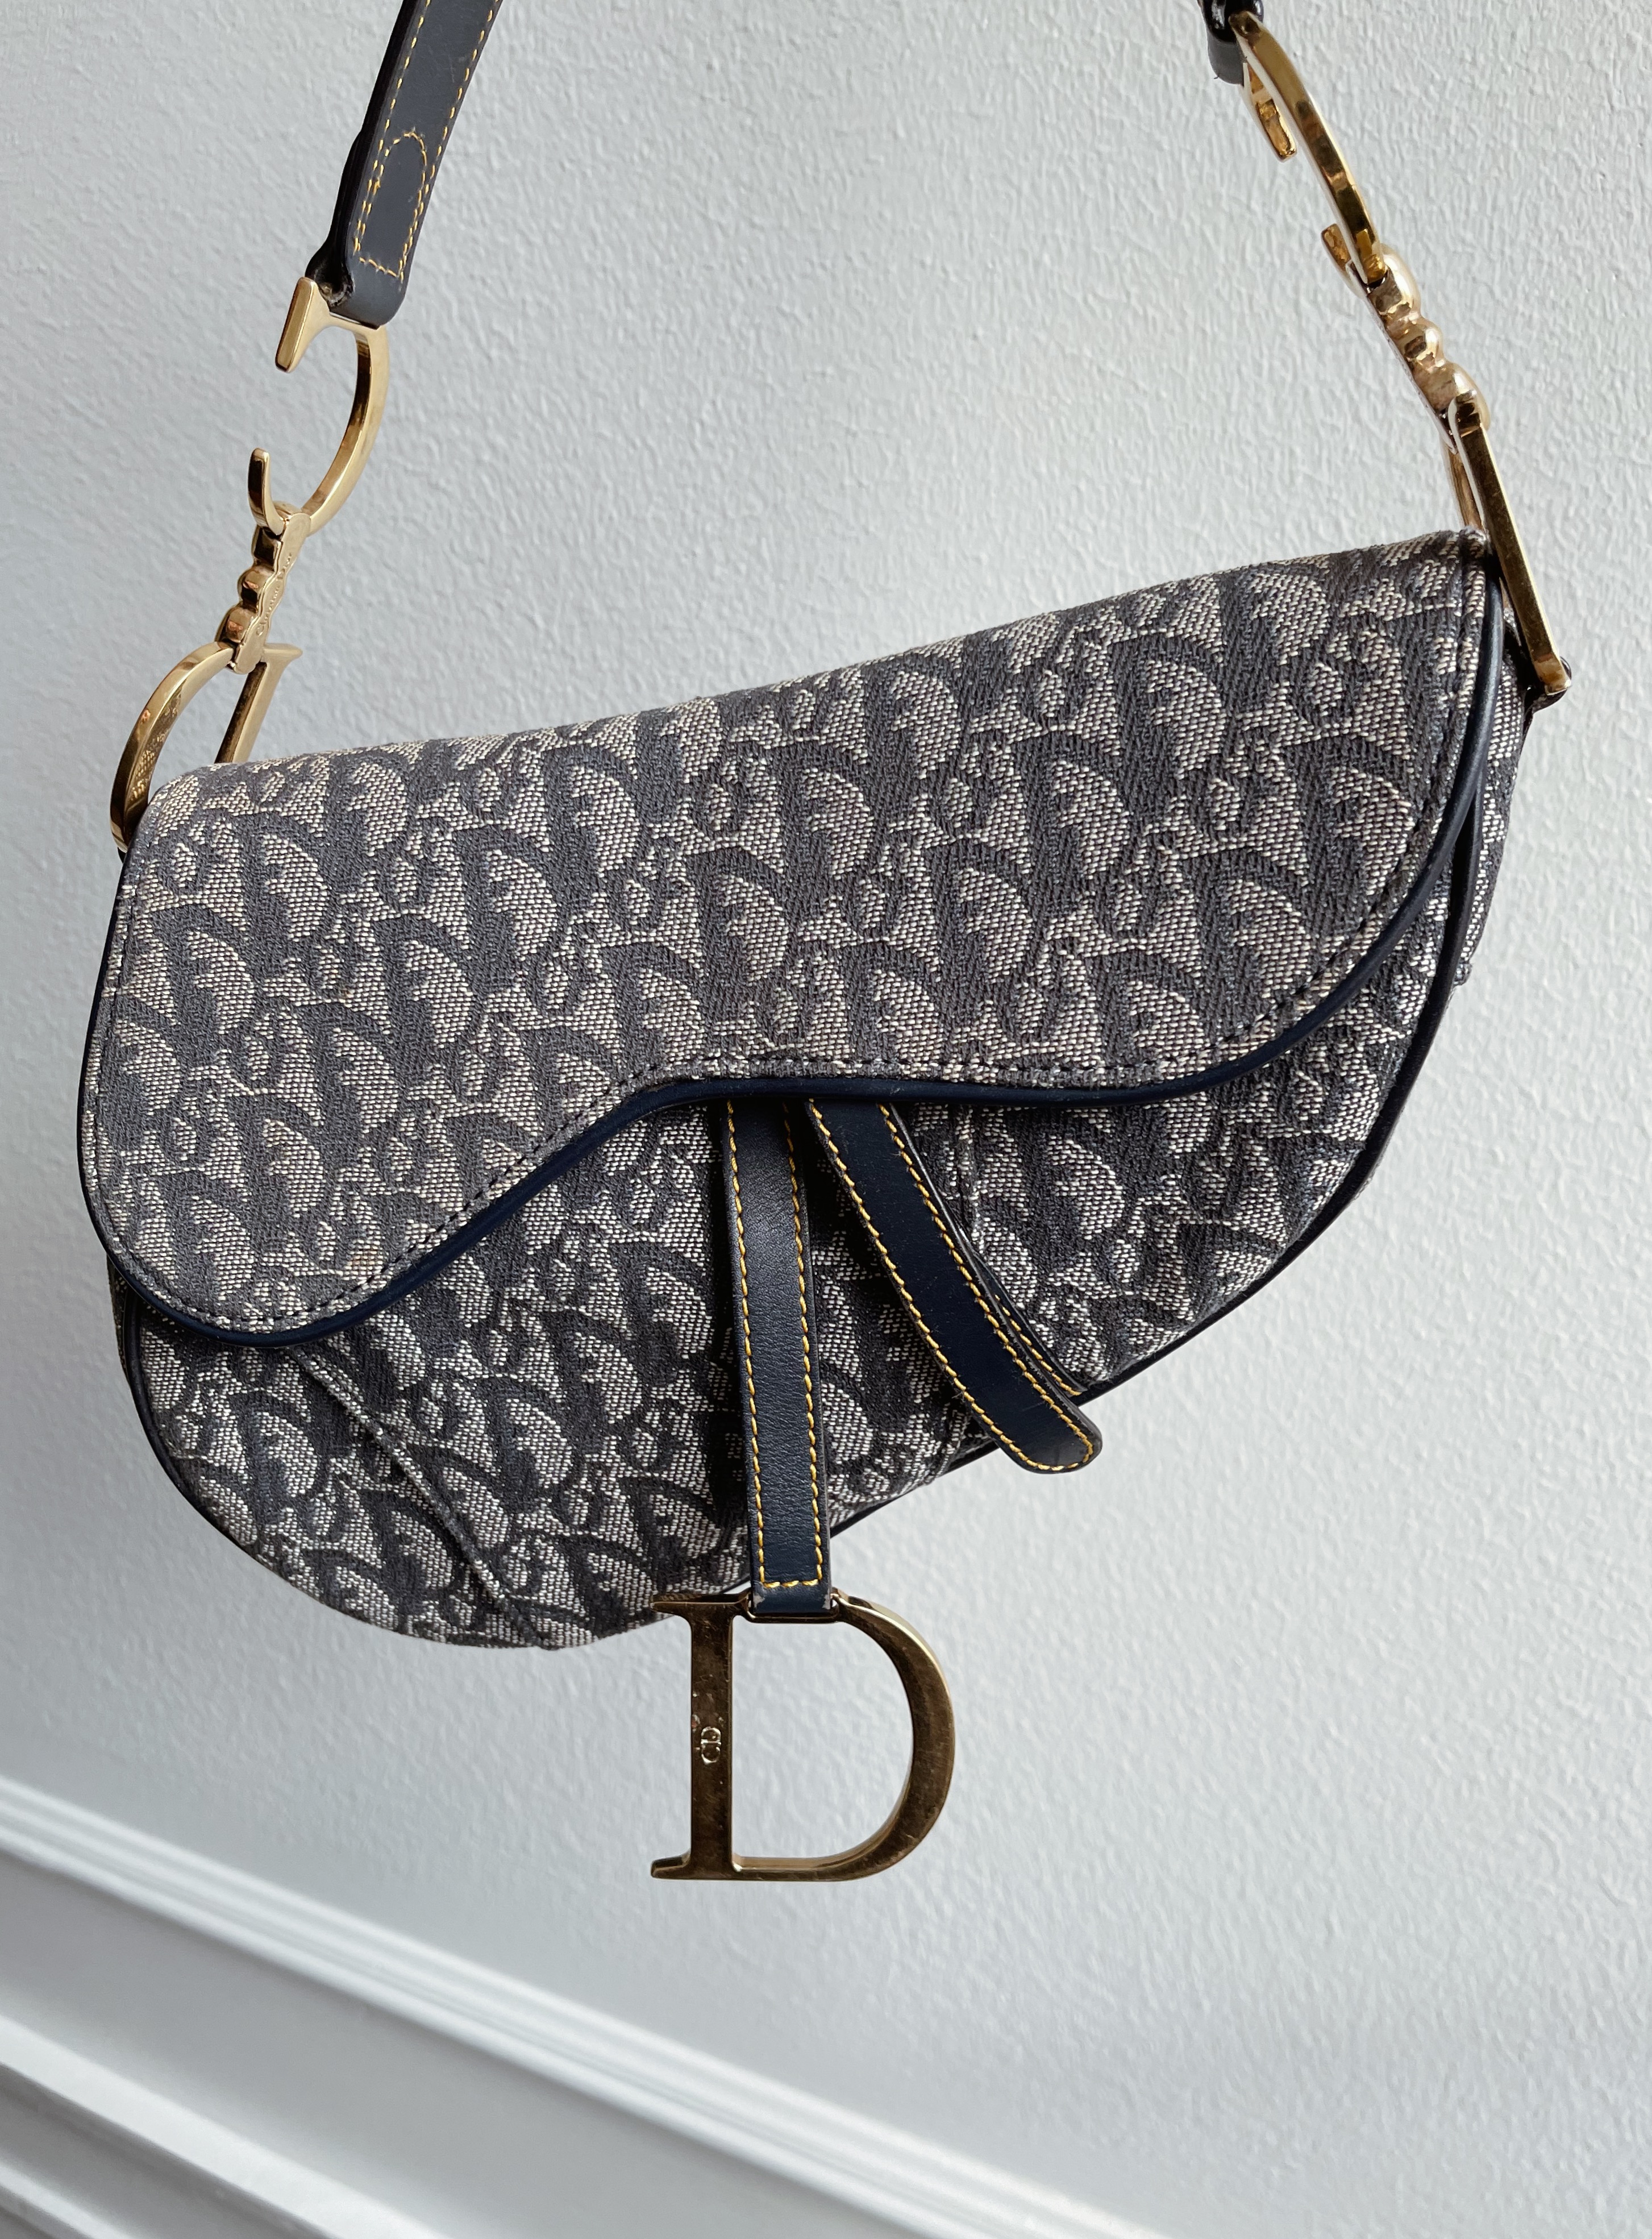 Túi xách Dior Saddle bag Yên Ngựa Cập nhật mẫu tháng 6